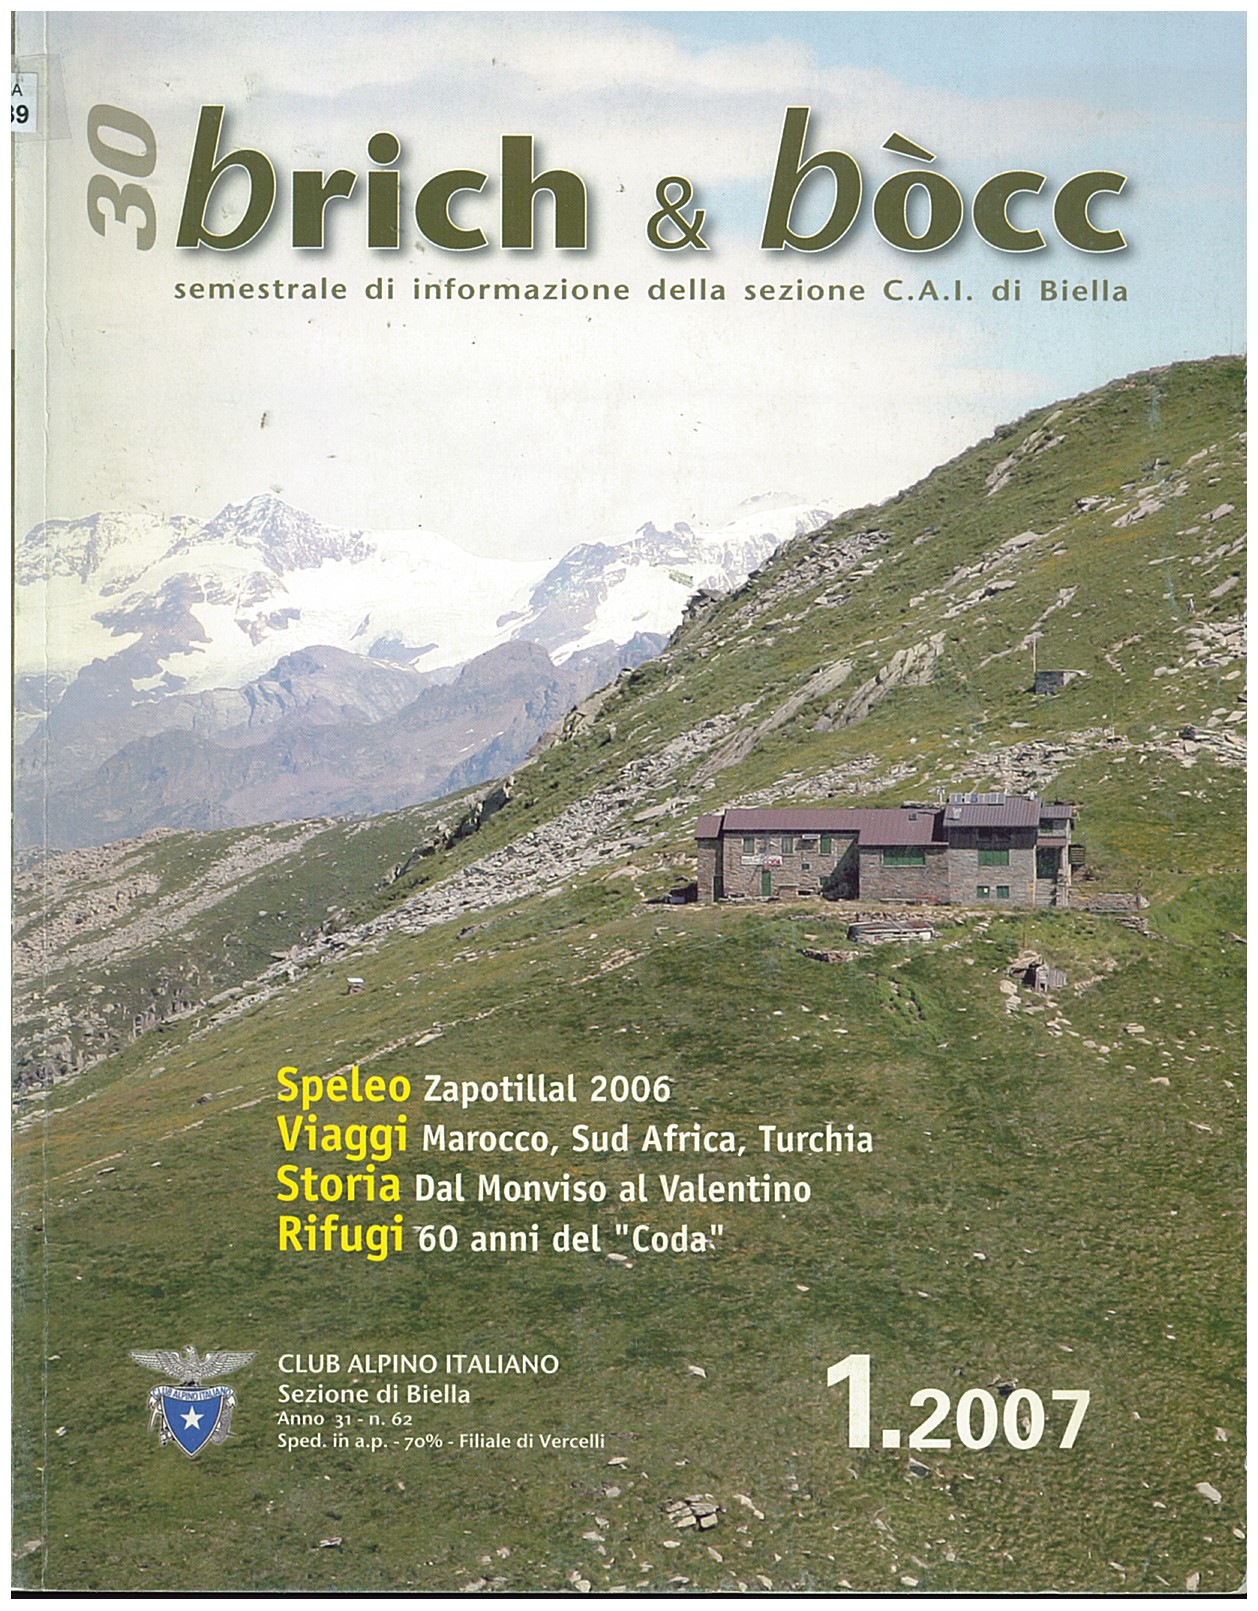 Copertina di Brich & Bòcc 1.2007 CAI Biella